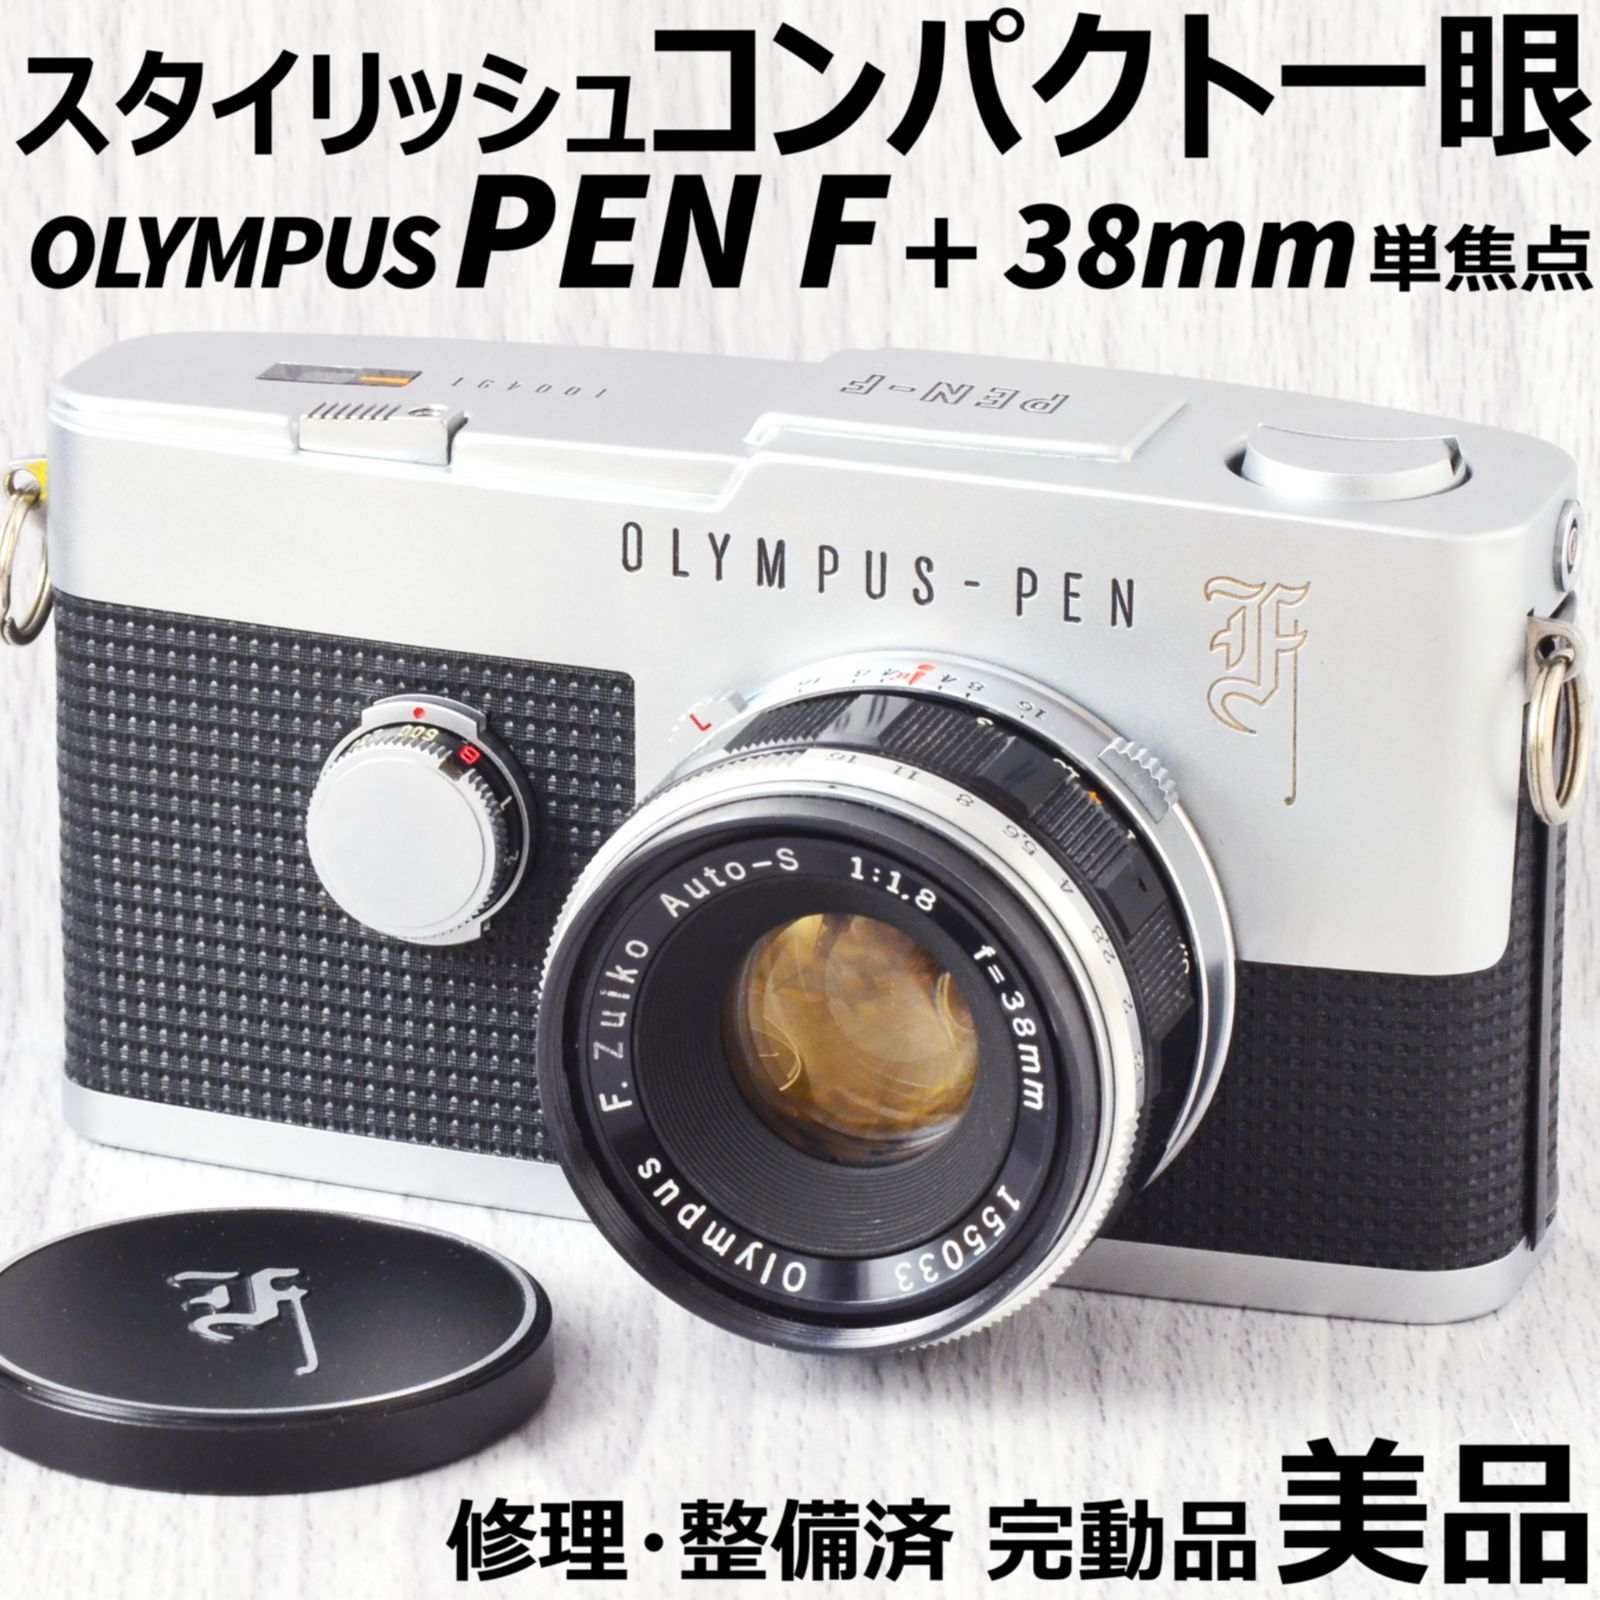 国内正規総代理店アイテム】 OLYMPUS PEN F + 38mm f1.8 単焦点レンズ